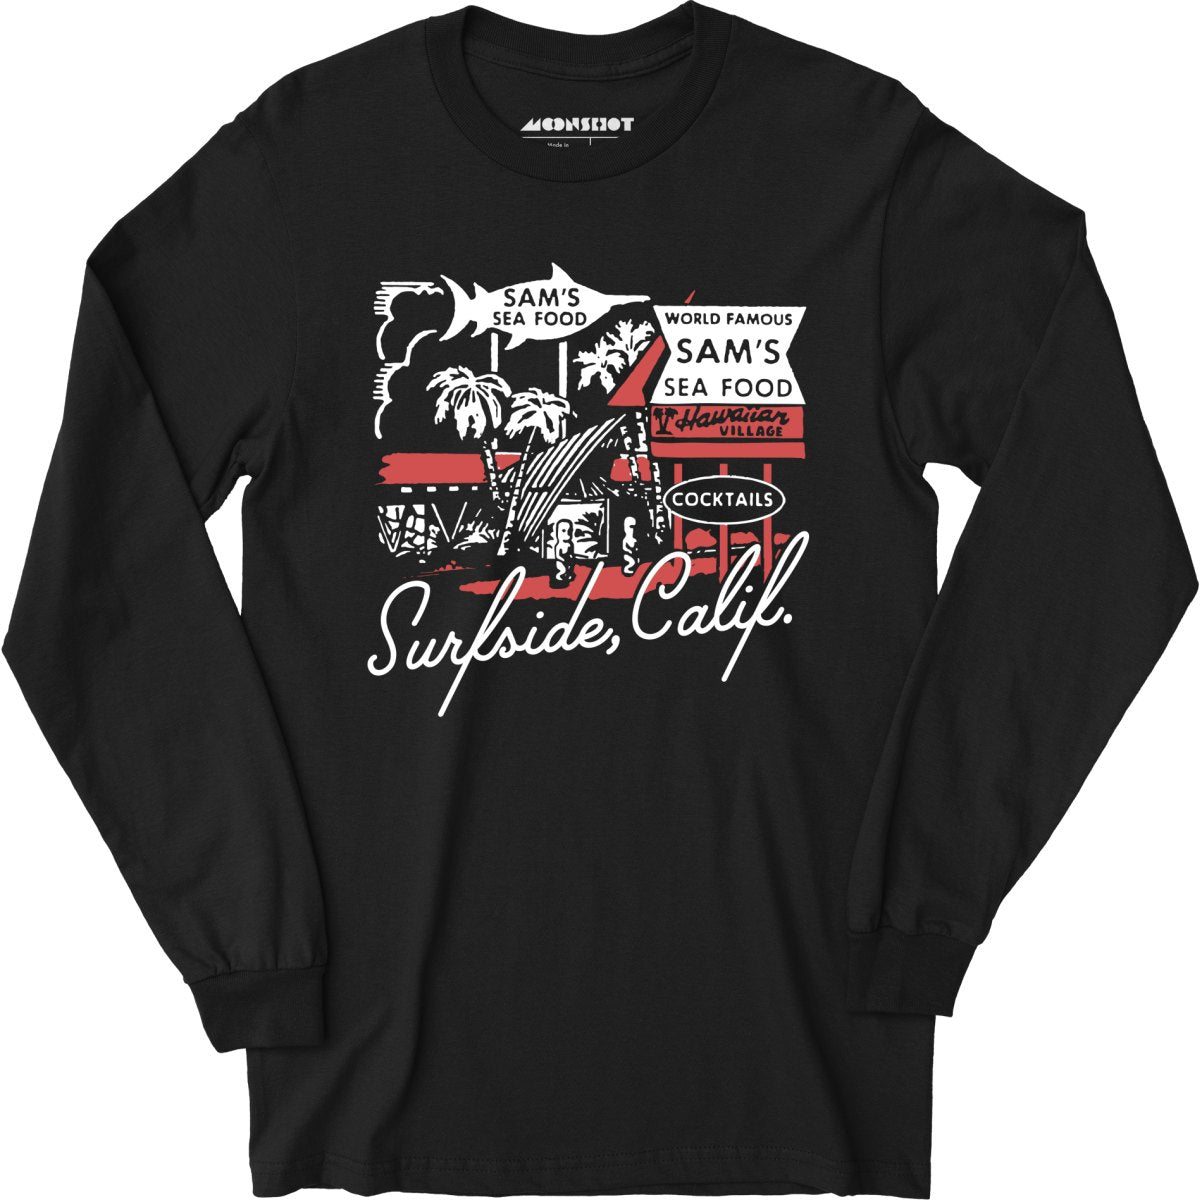 Sam's Seafood - Surfside, CA - v2 - Long Sleeve T-Shirt